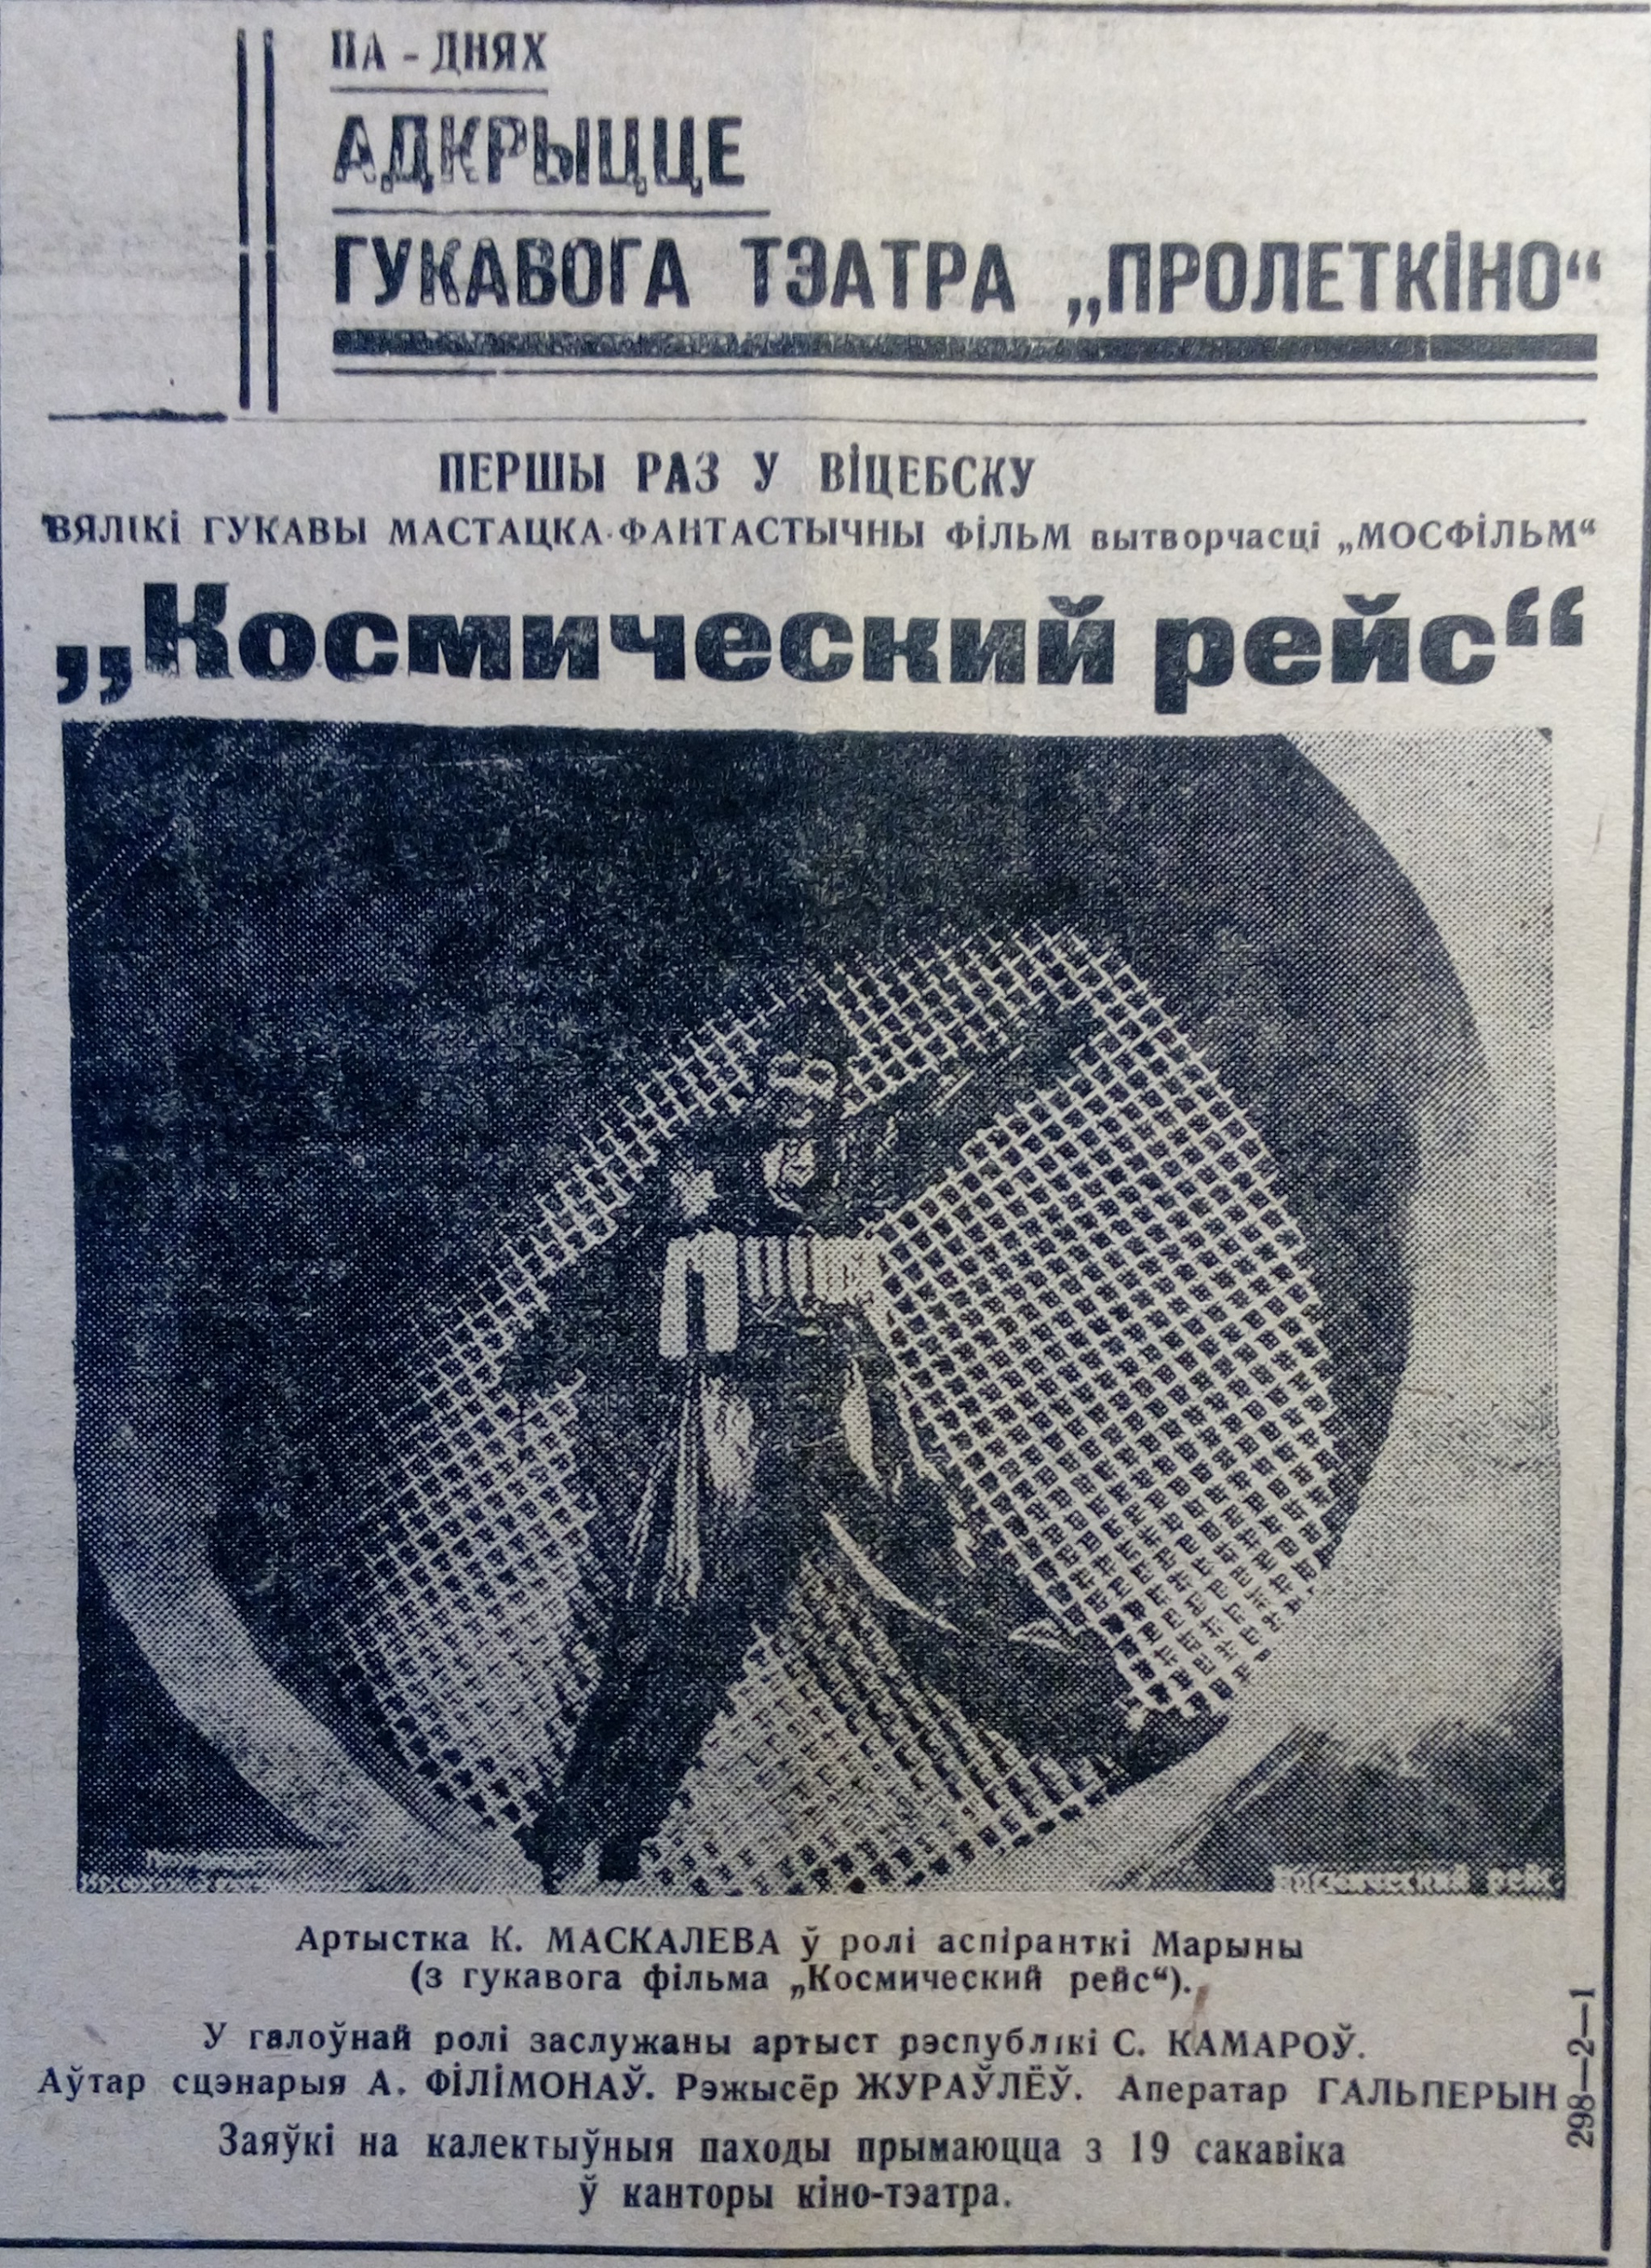 Открытие звукового кинотеатра «Пролеткино» после реконструкции. Фильм «Космический рейс». Витебский пролетарий, 18 марта 1936 года